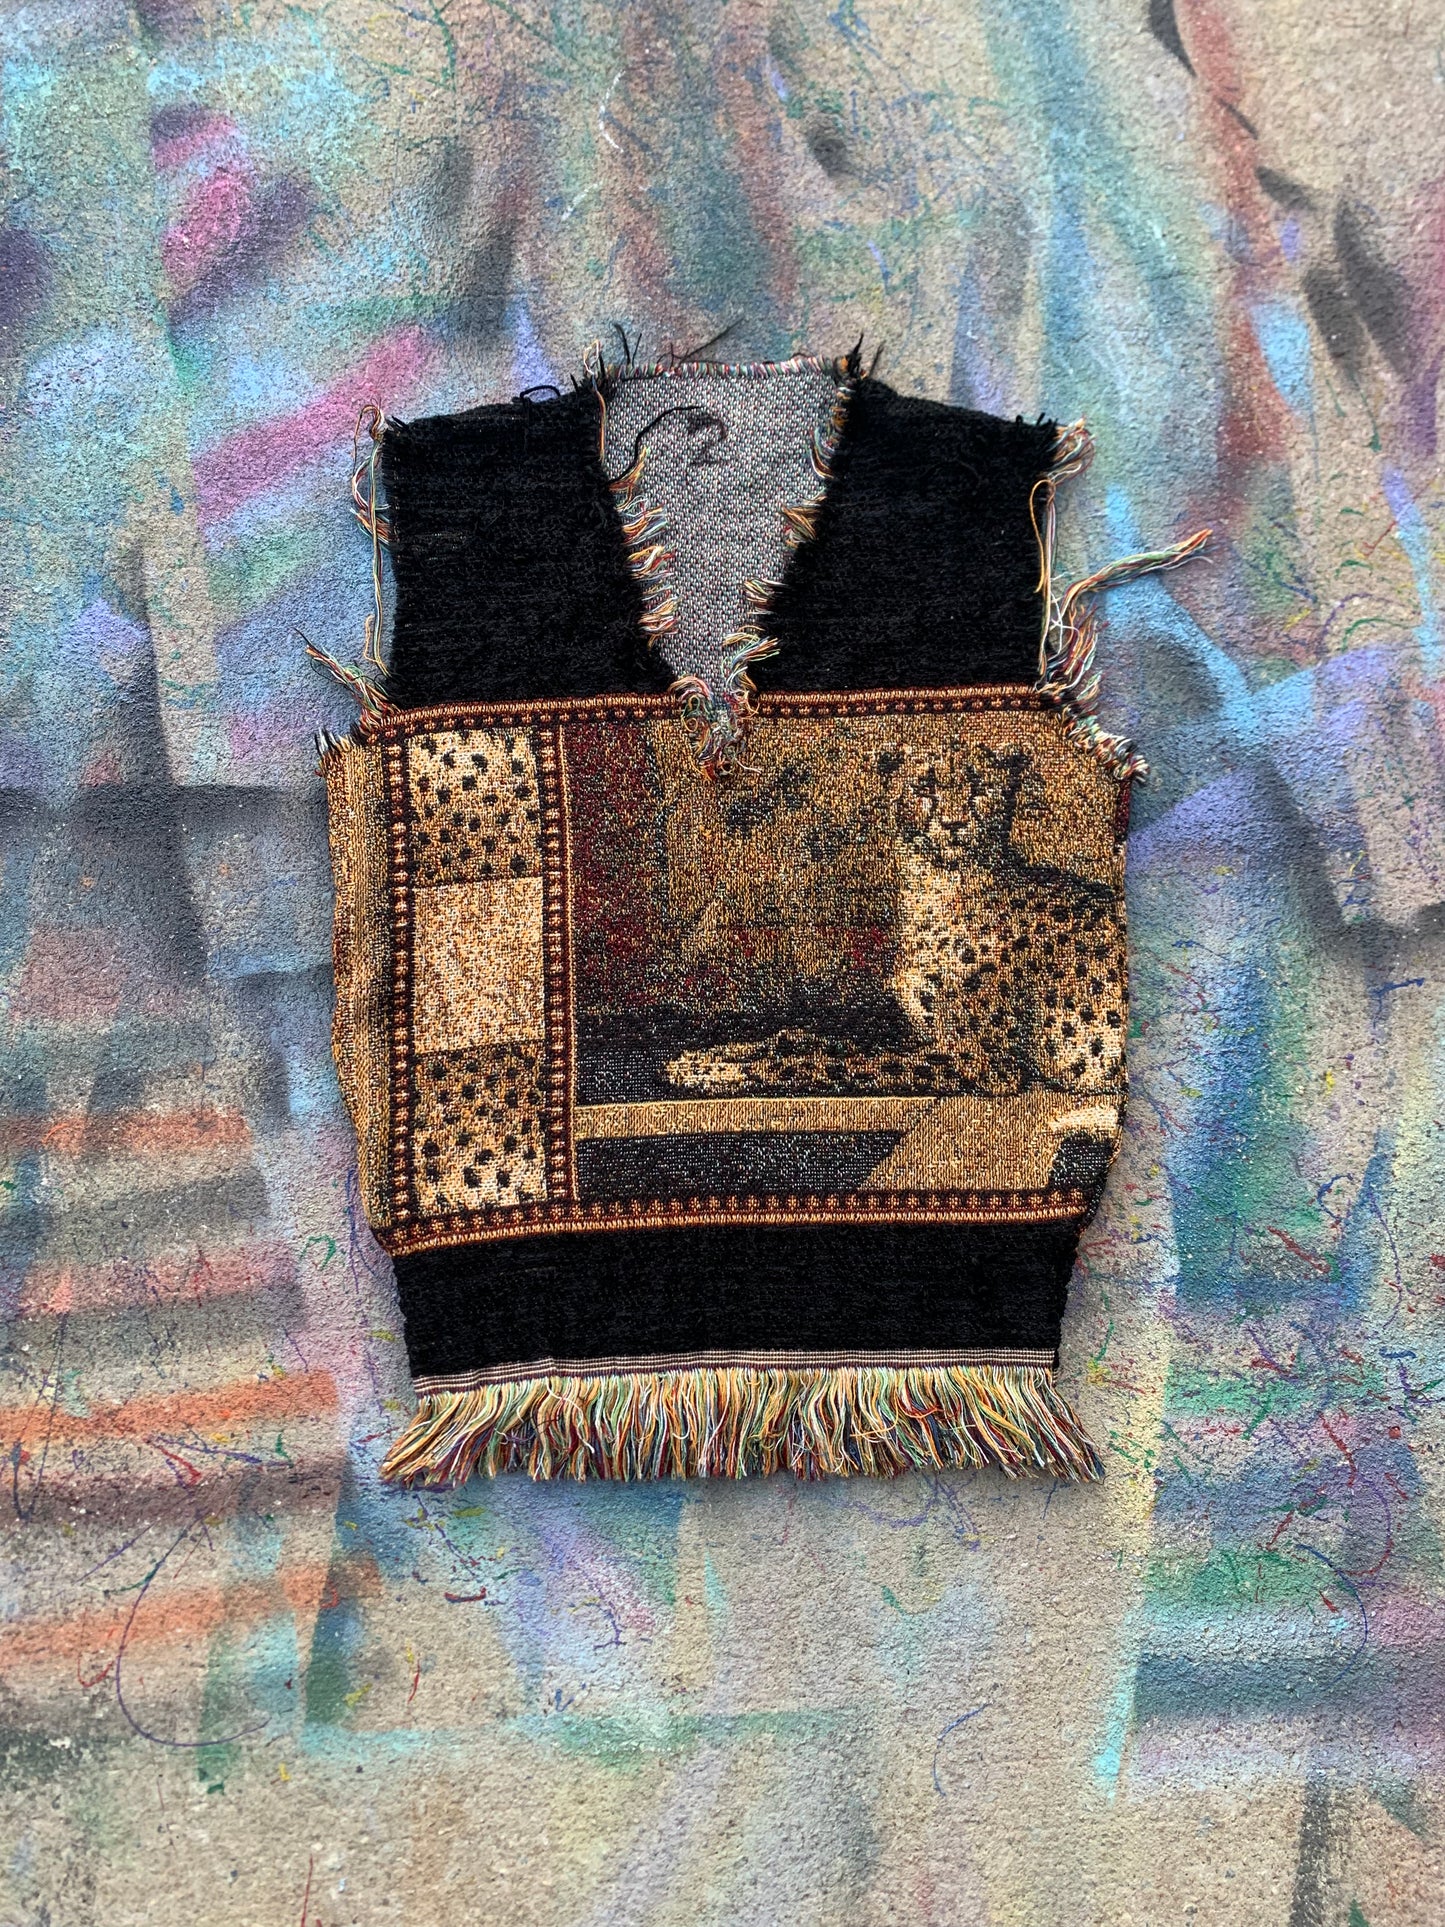 1/1 Tapestry Tiger Sweatervest #2 (Tan/Black)- L